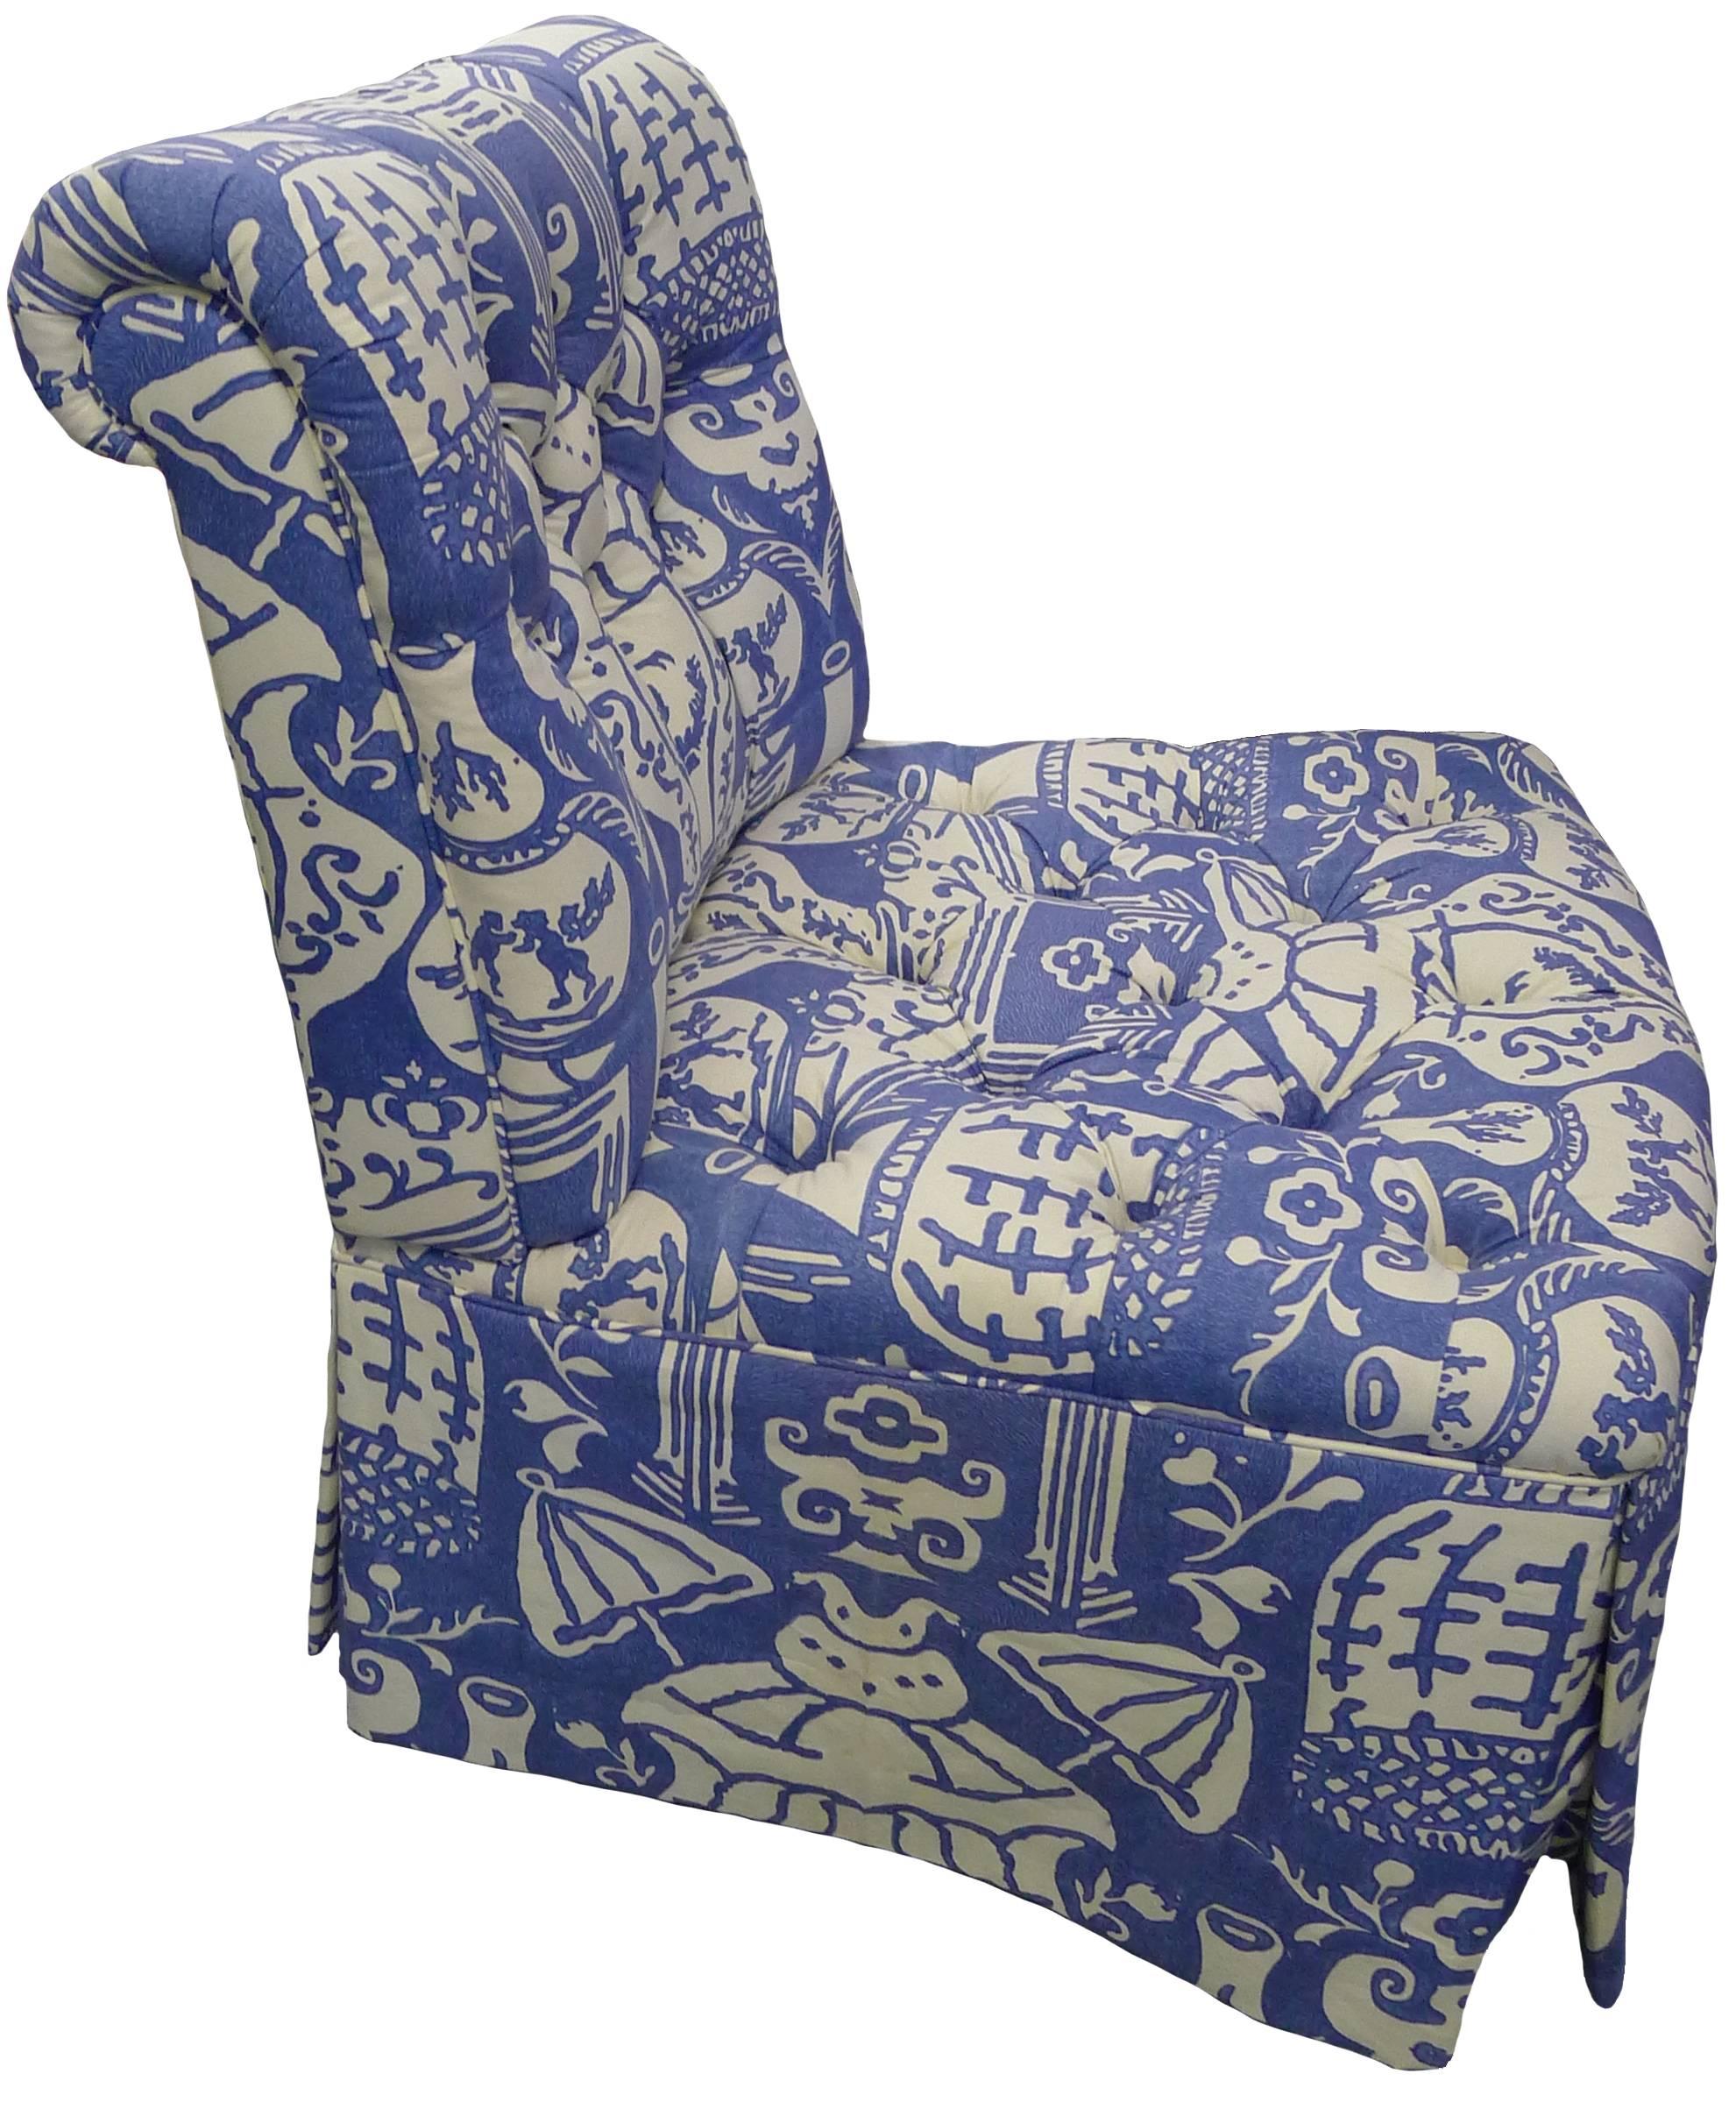 Chinoiserie David Hicks the Vase Blue Upholstered Slipper Chair